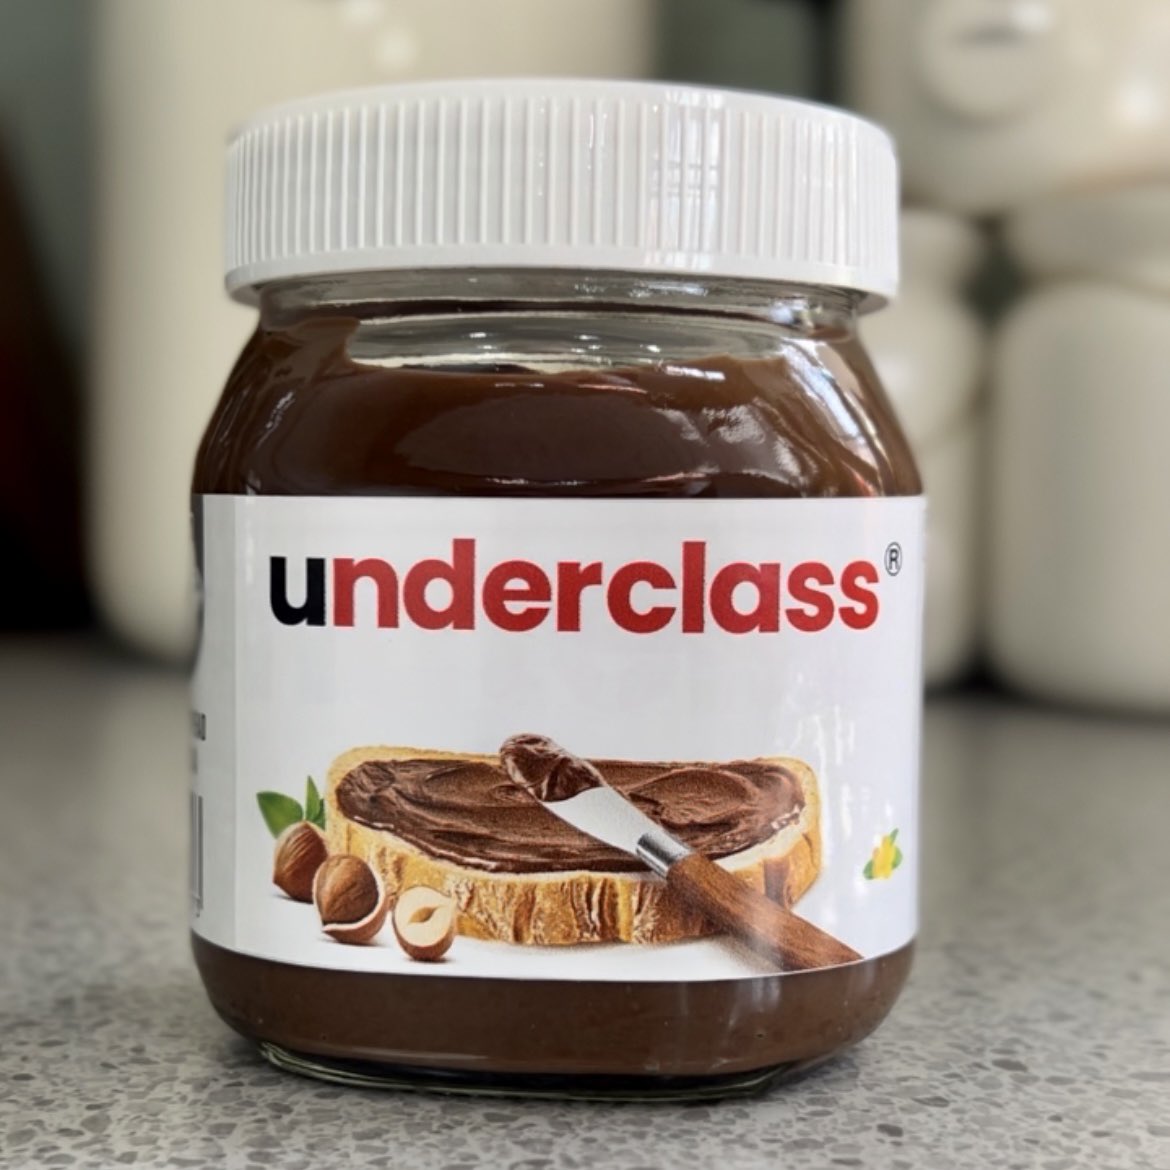 Underclass Nutella?? WHAAAAT!? 🎉🎉